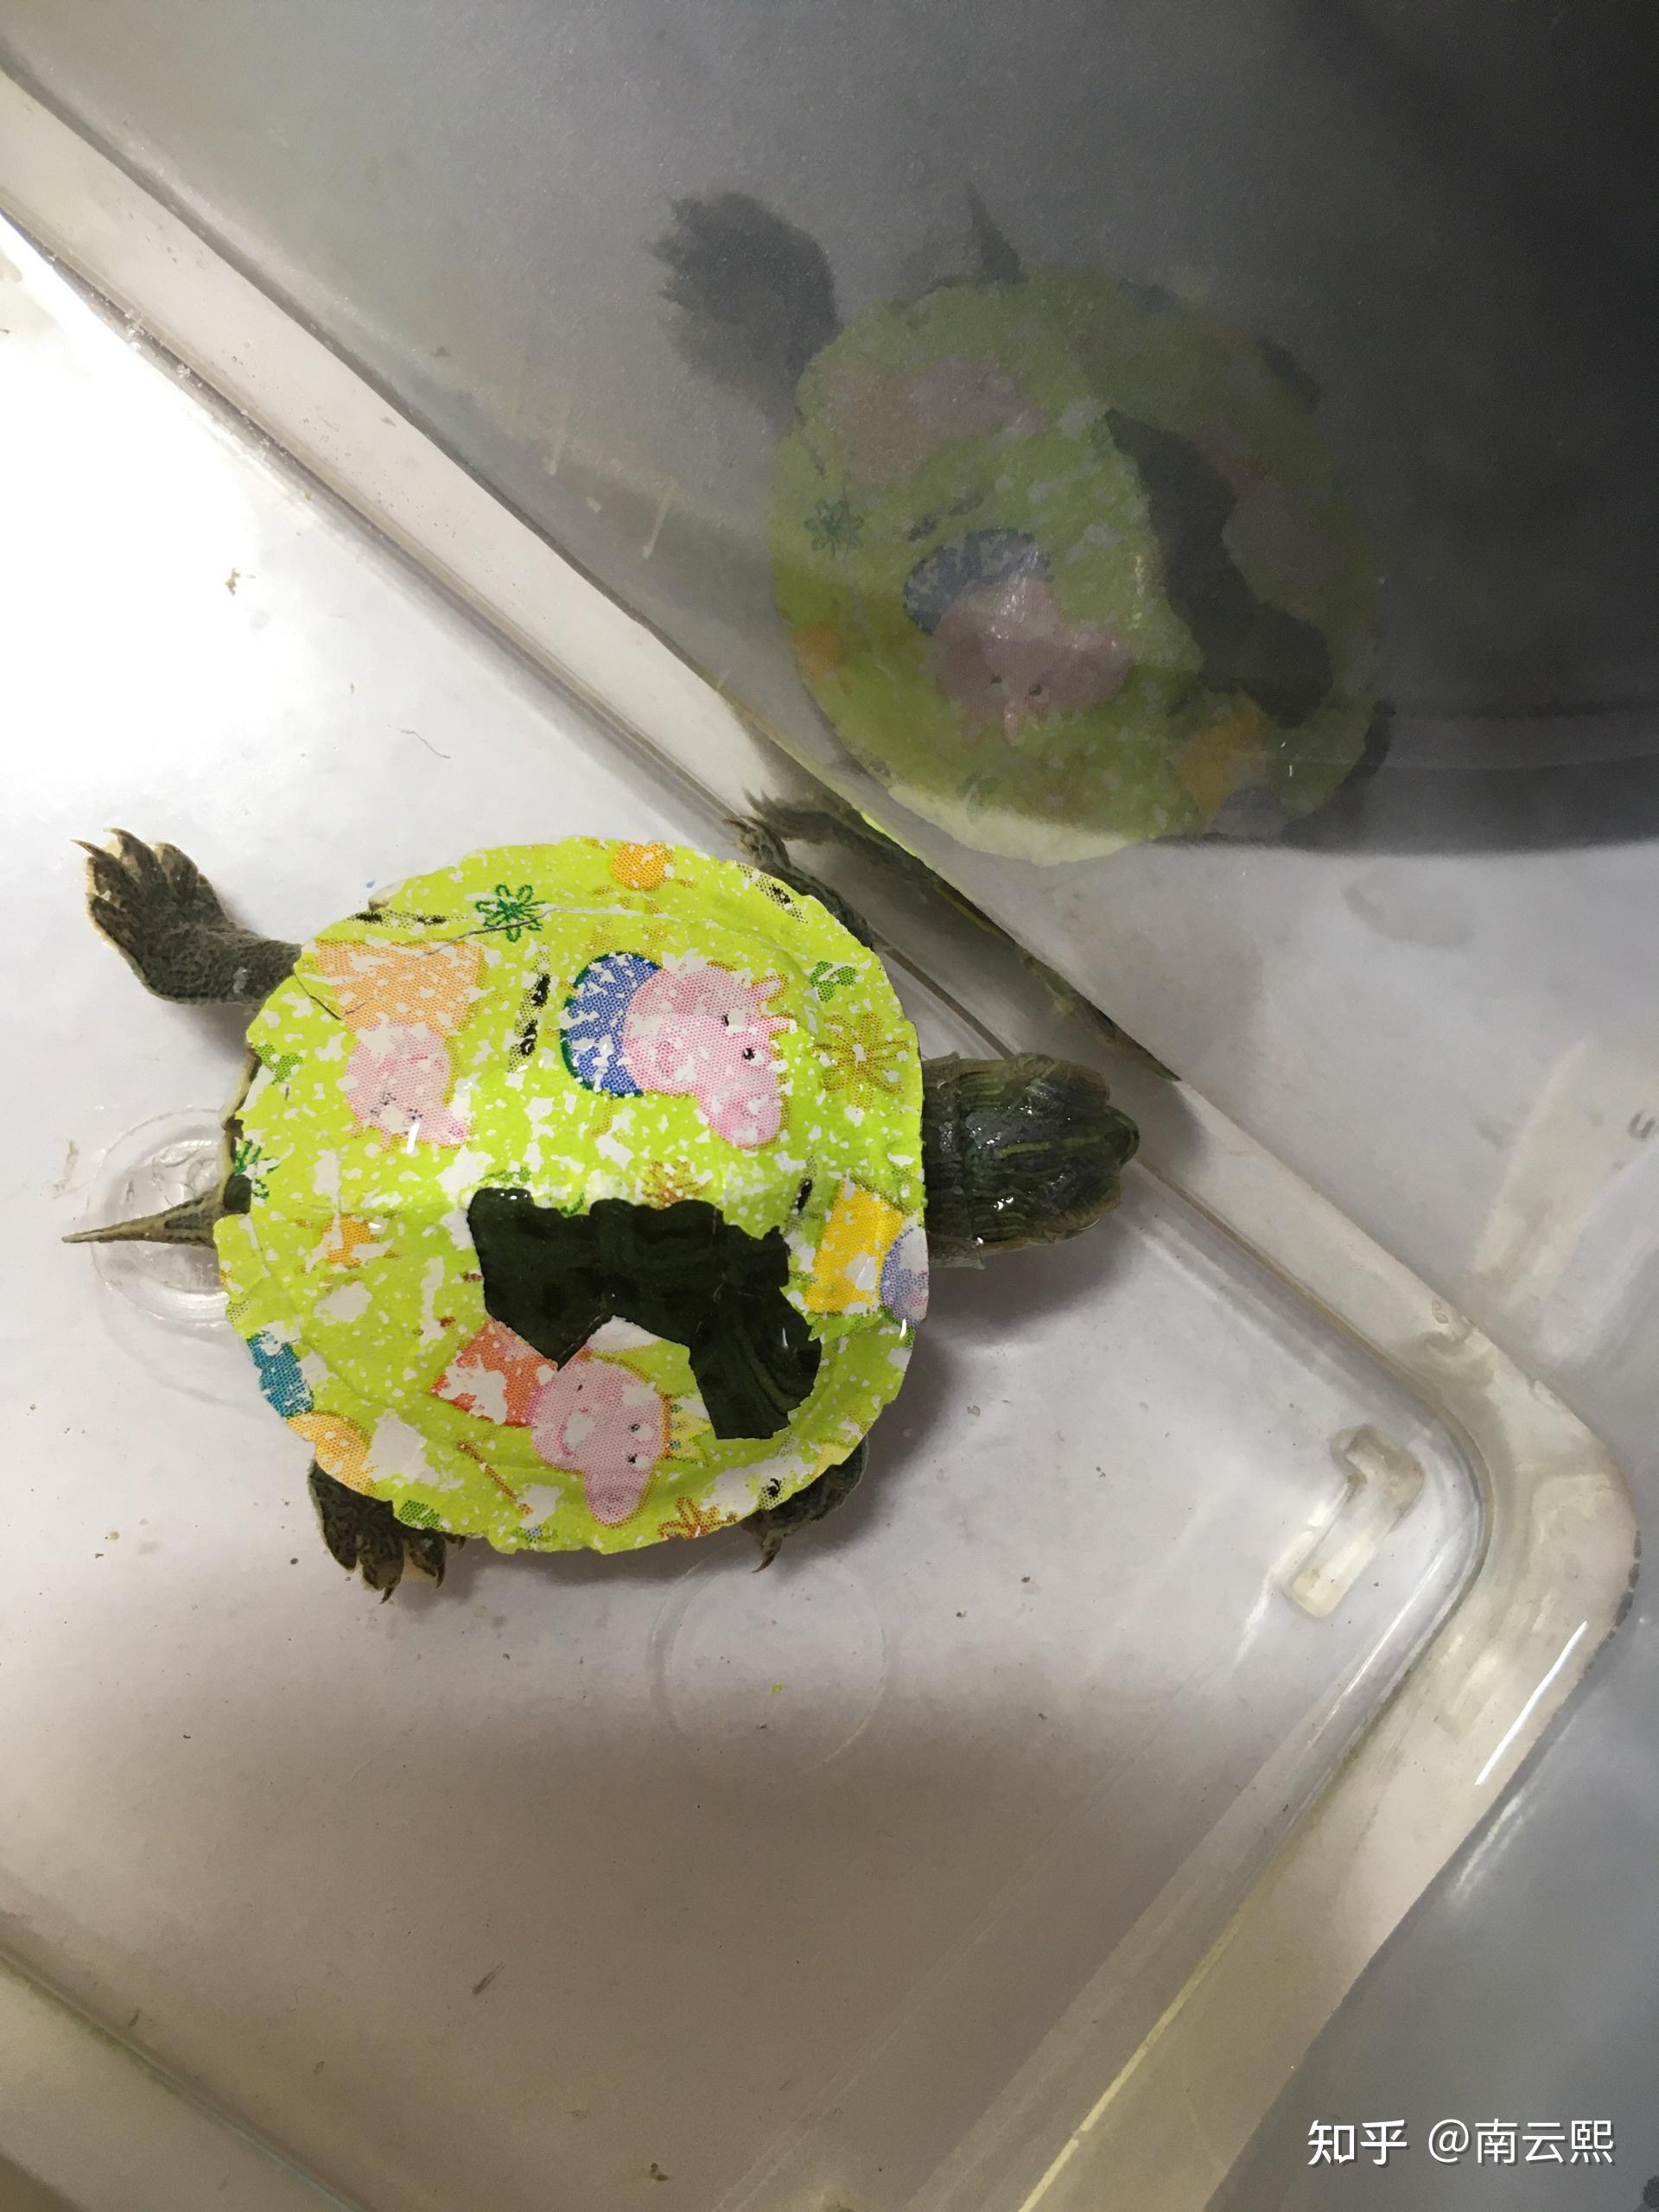 我买了一个巴西龟 但是龟壳上有印花 哪位大神知道怎样去除呀? 